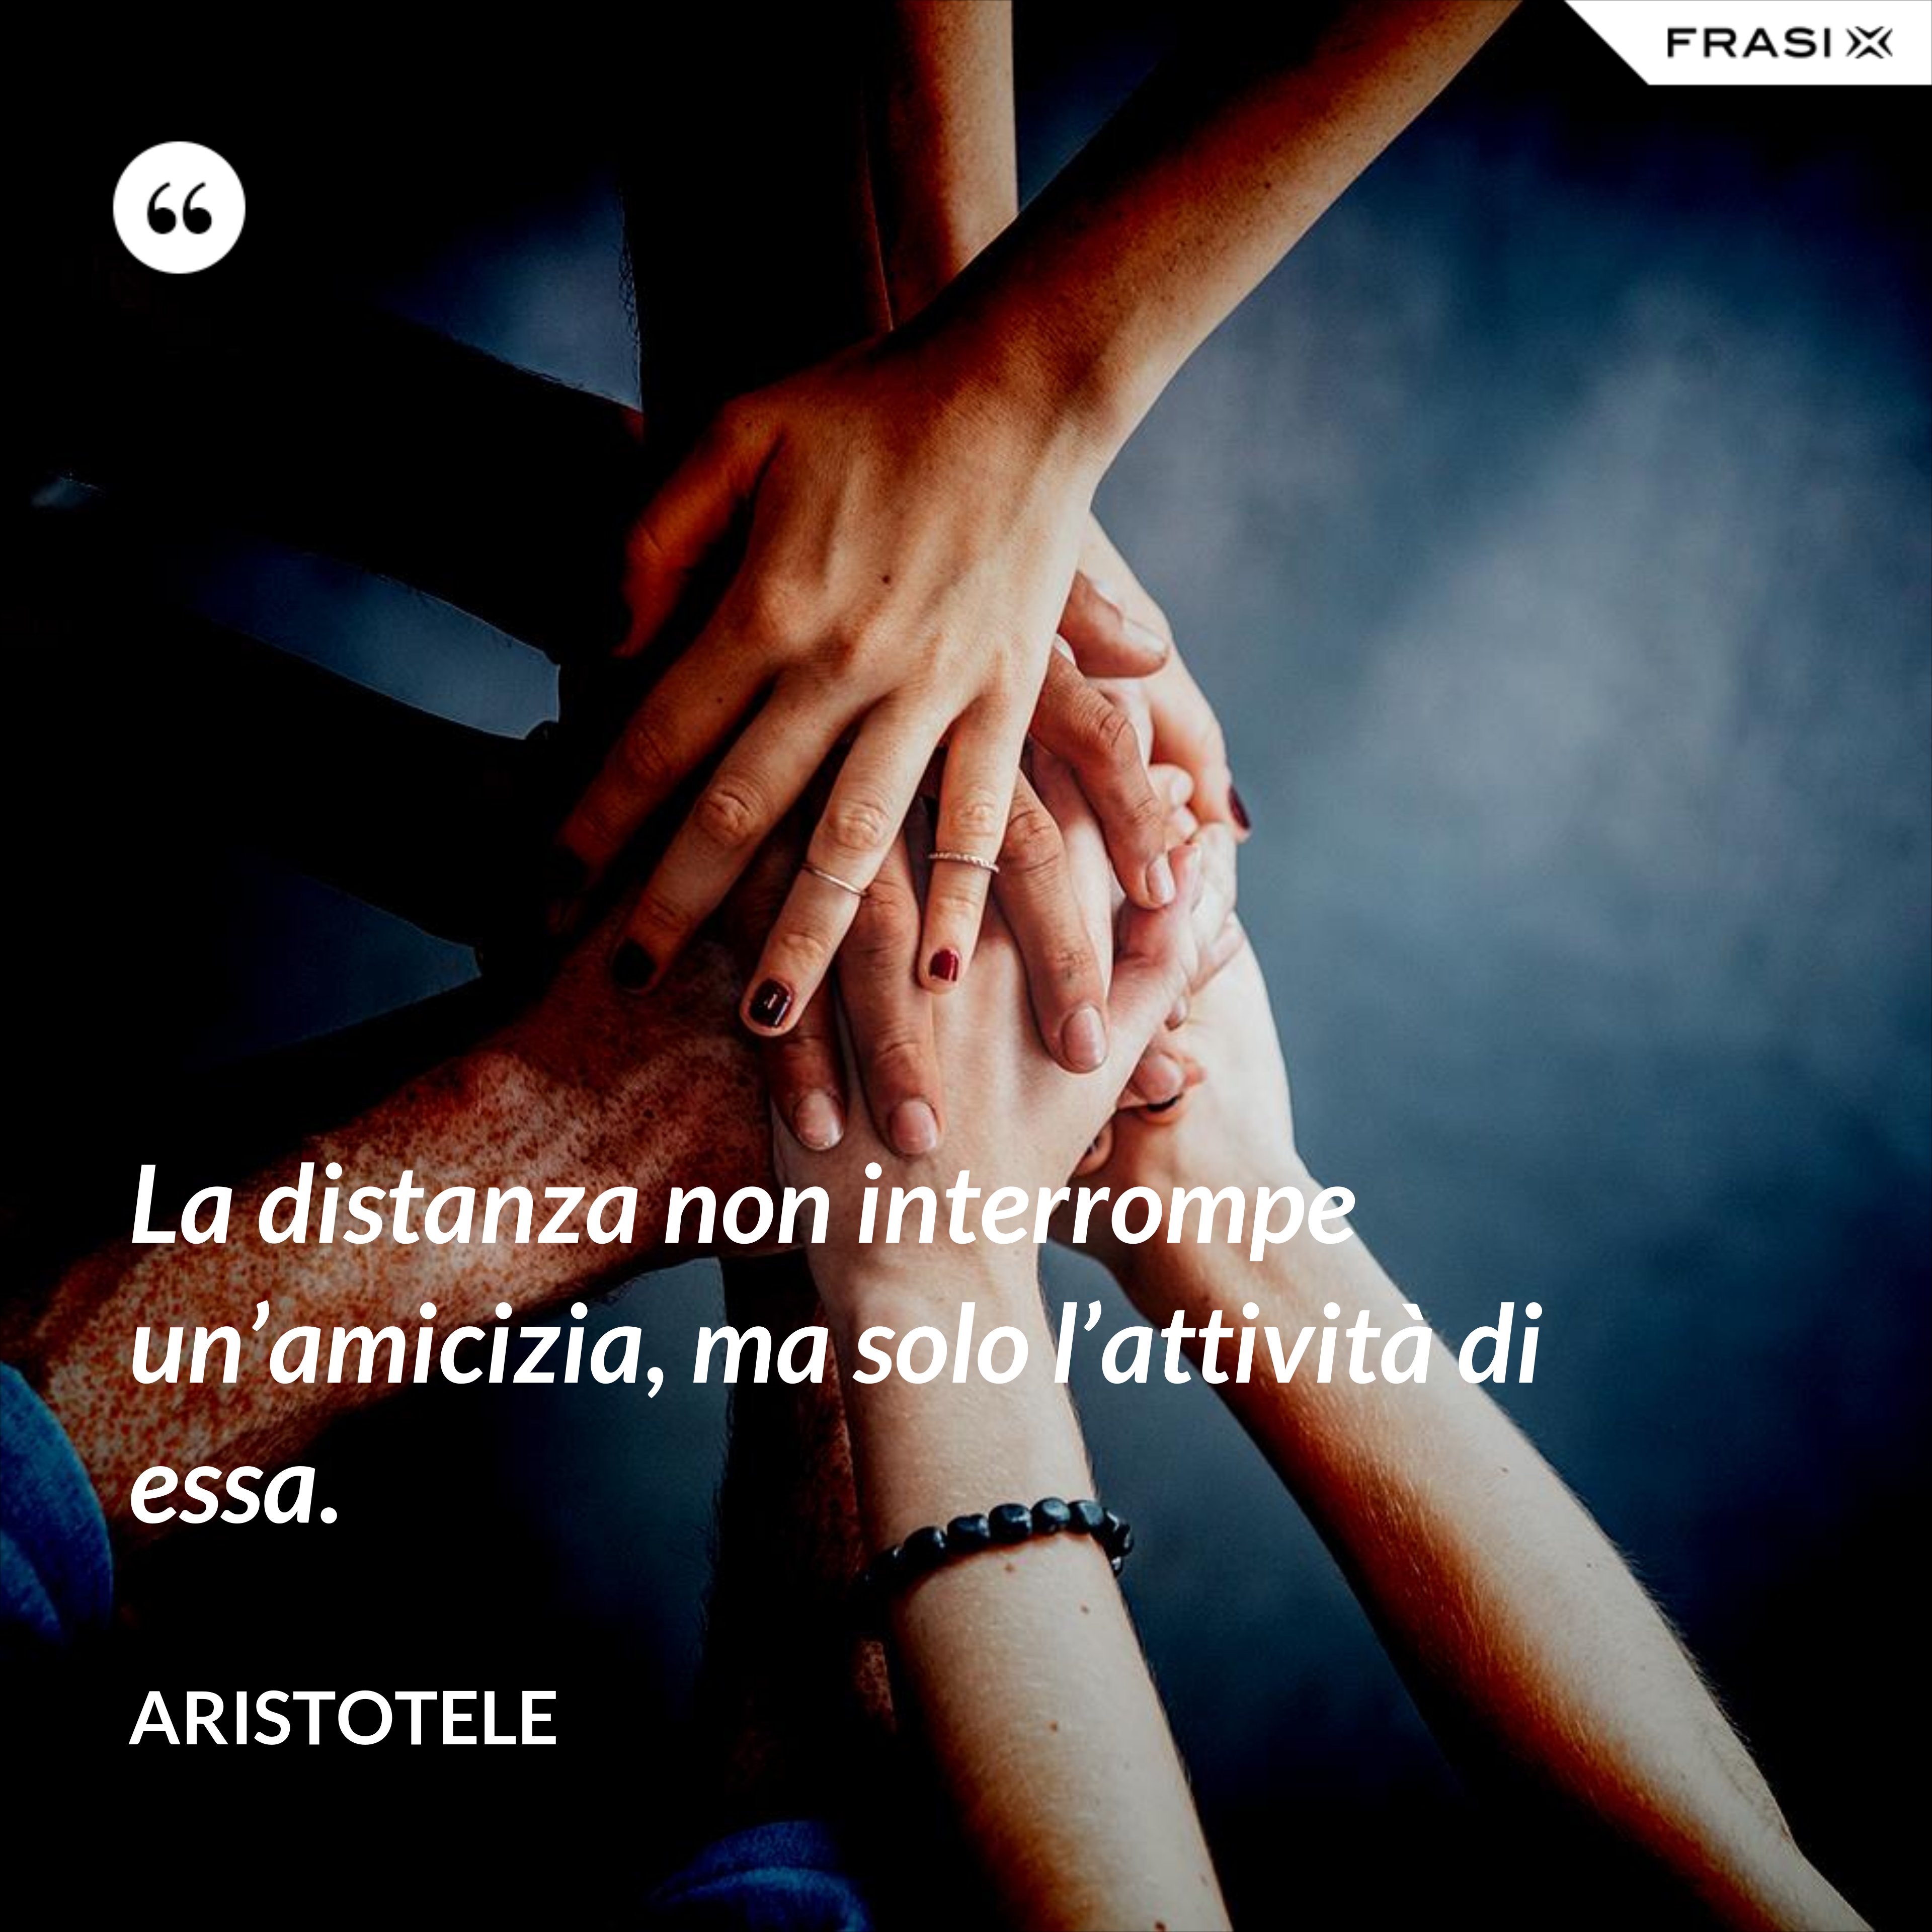 La distanza non interrompe un’amicizia, ma solo l’attività di essa. - Aristotele